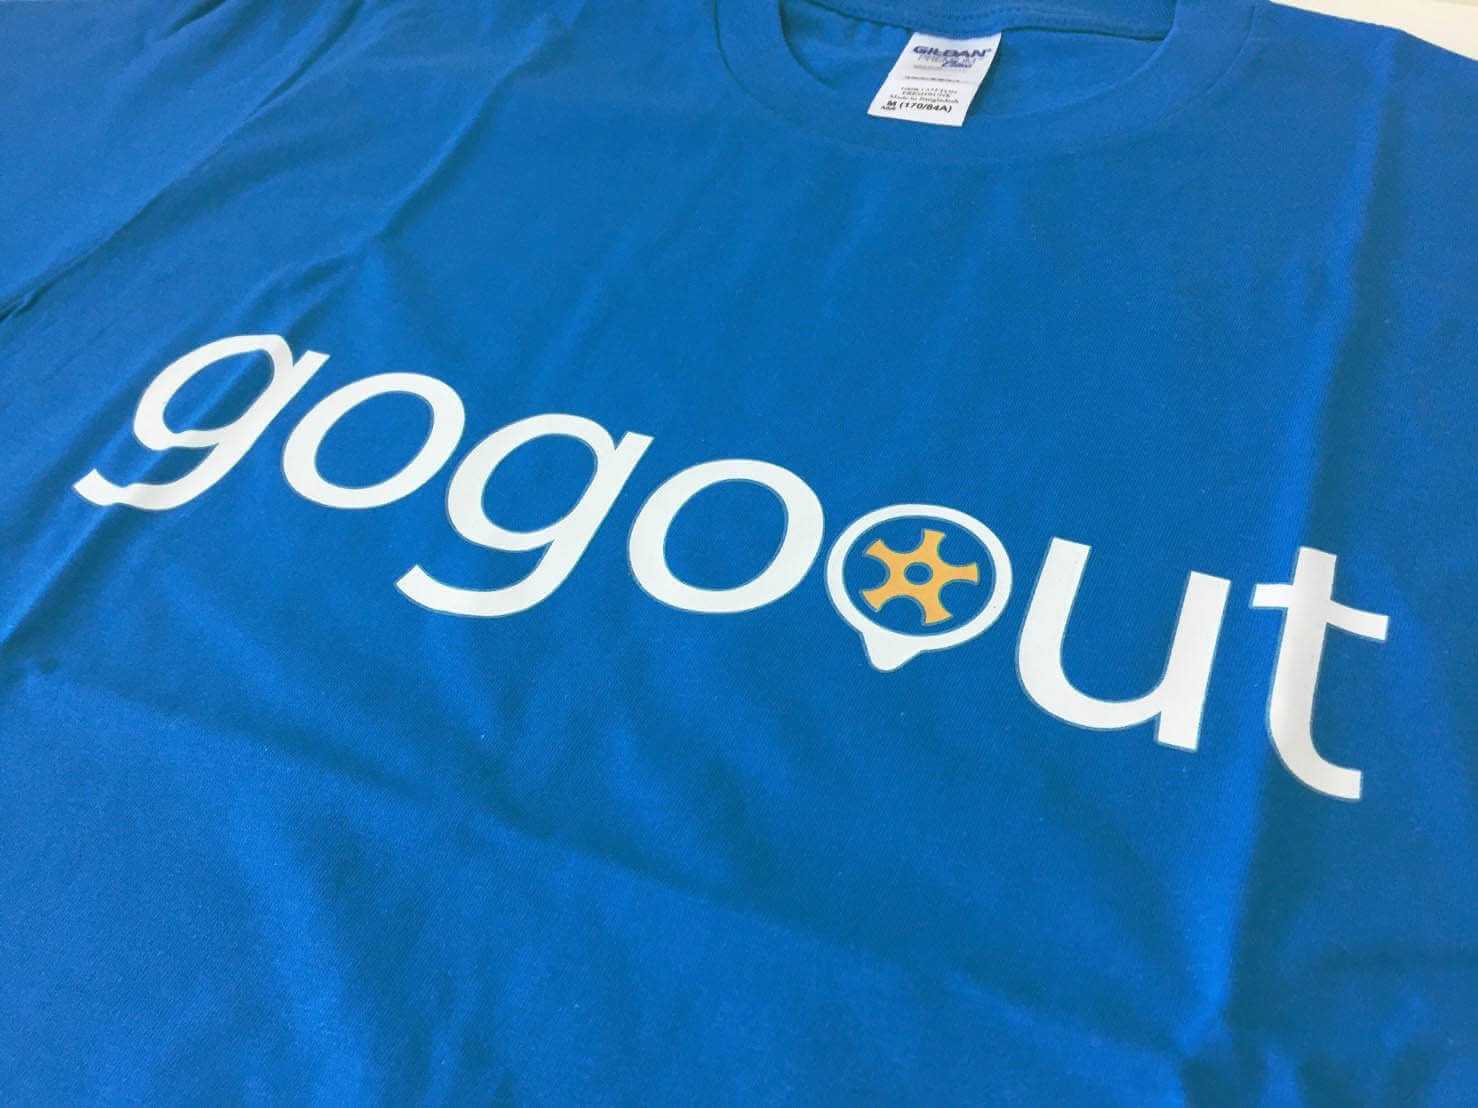 gogoout 客製化制服的第1張圖(客製化公司制服、班服製作、團體服製作等示意或作品圖)